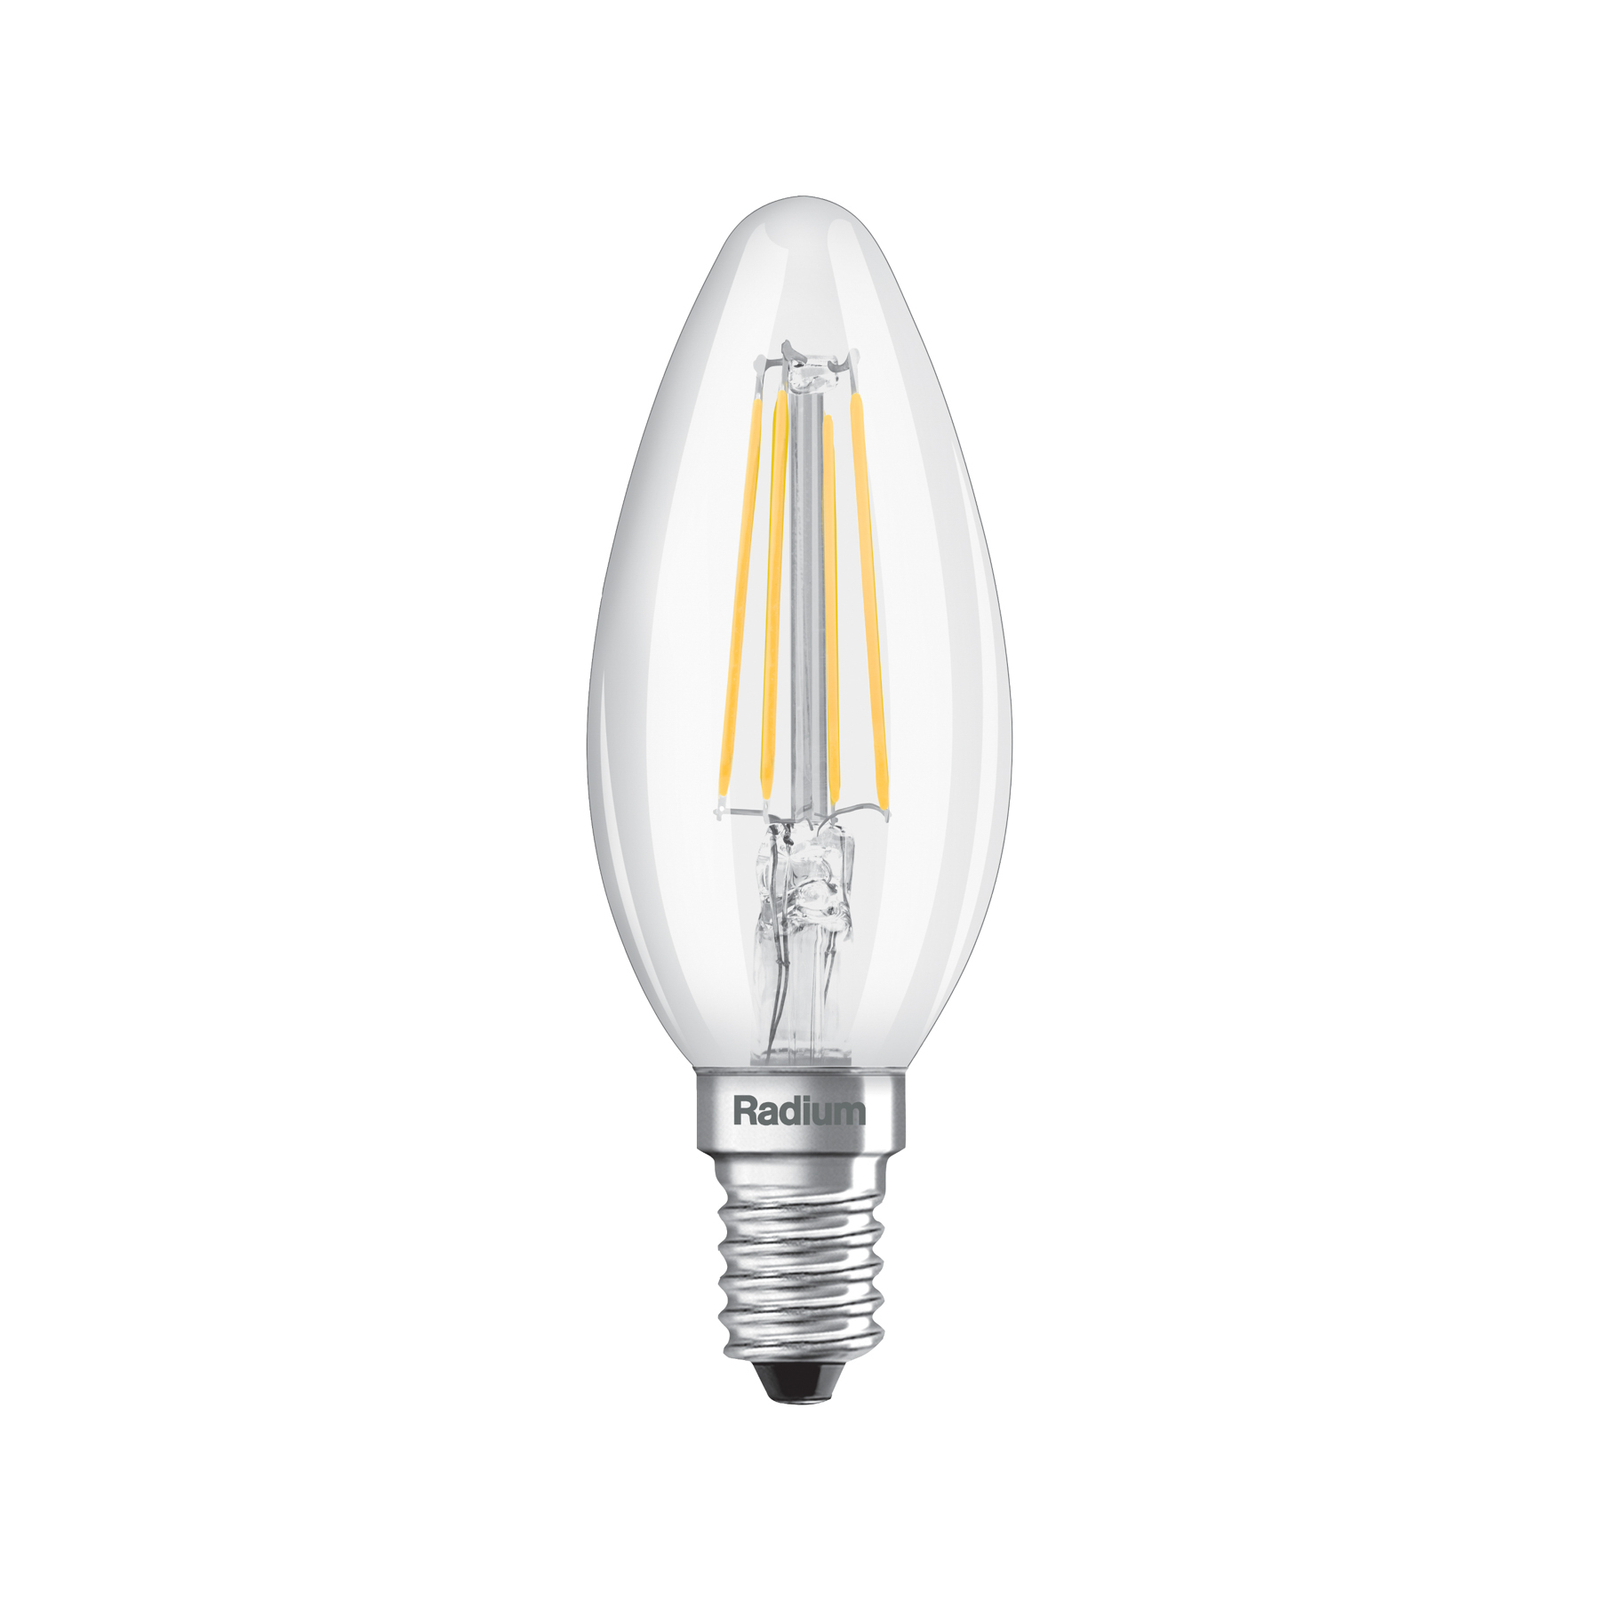 Radium lampadina candela LED Essence E14 4W 470lm